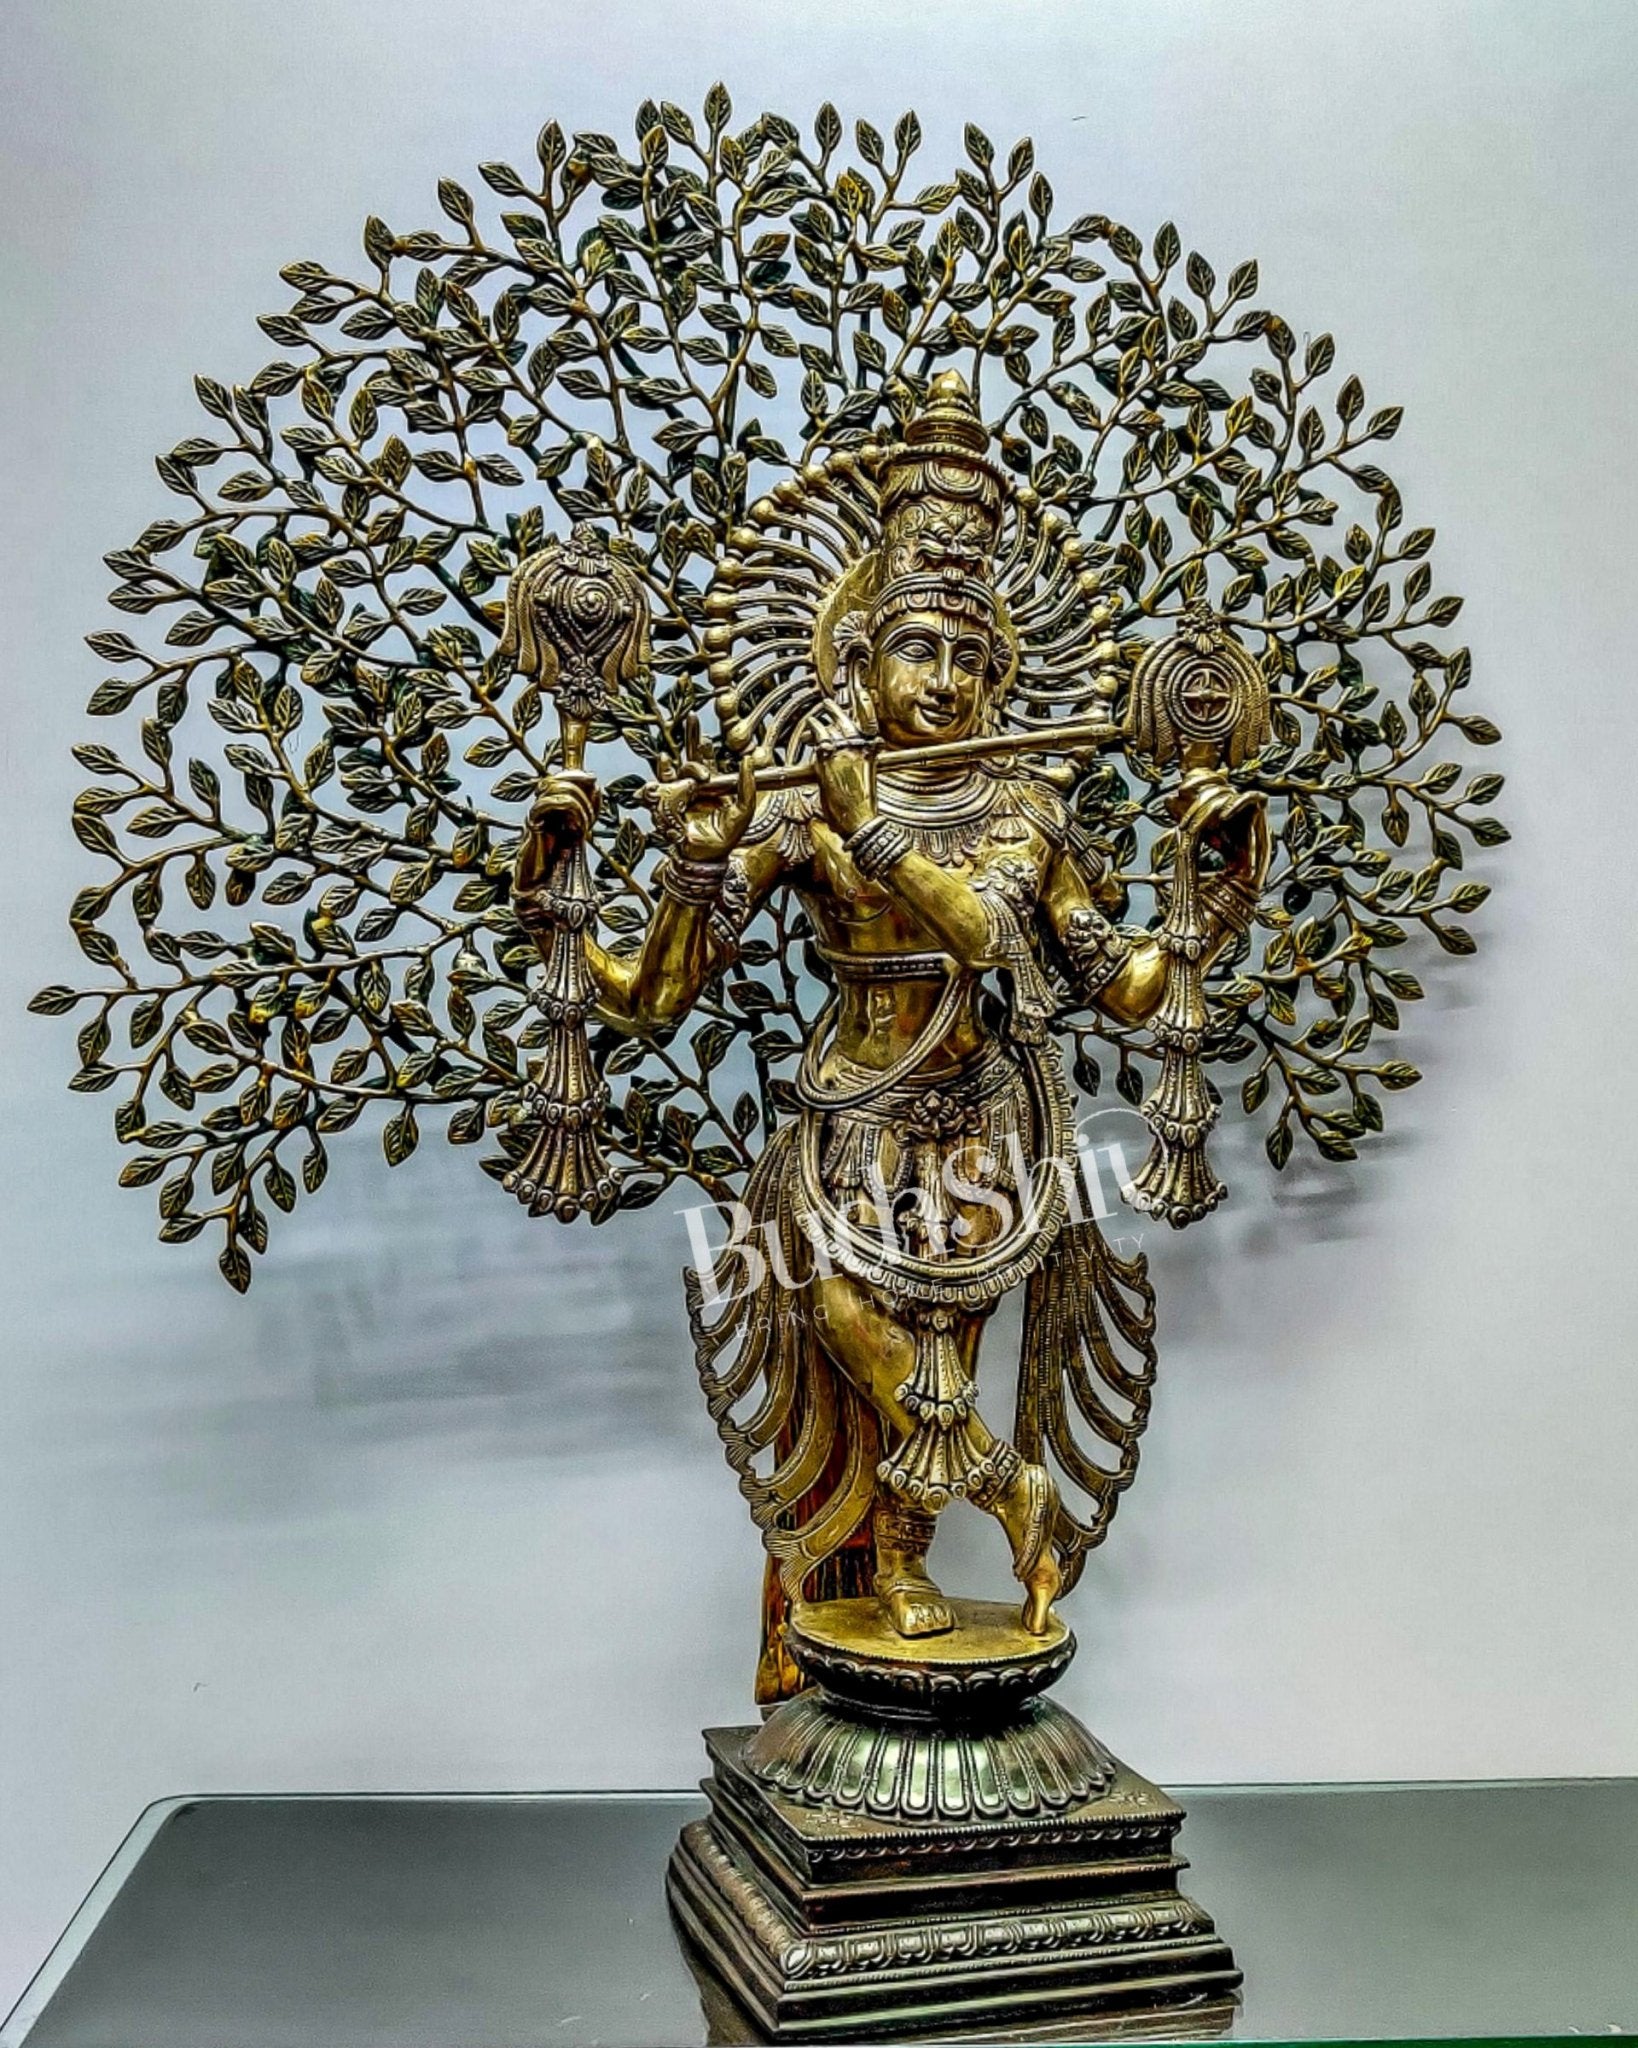 Brass Chaturbhuja Krishna with tree 36" - Budhshiv.com